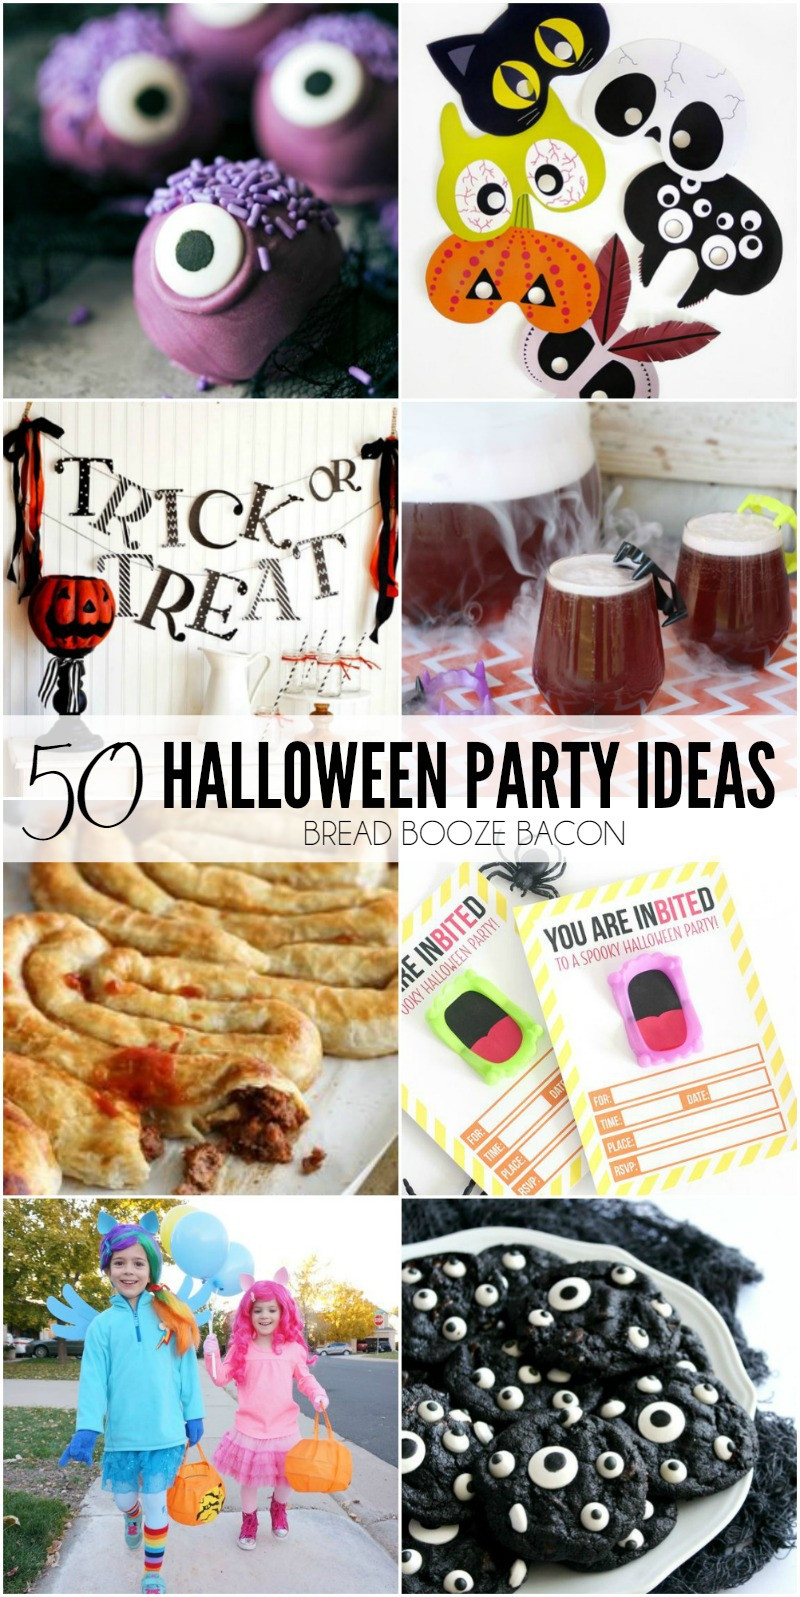 Halloween Party Ideas 2016
 50 More Halloween Party Ideas • Bread Booze Bacon